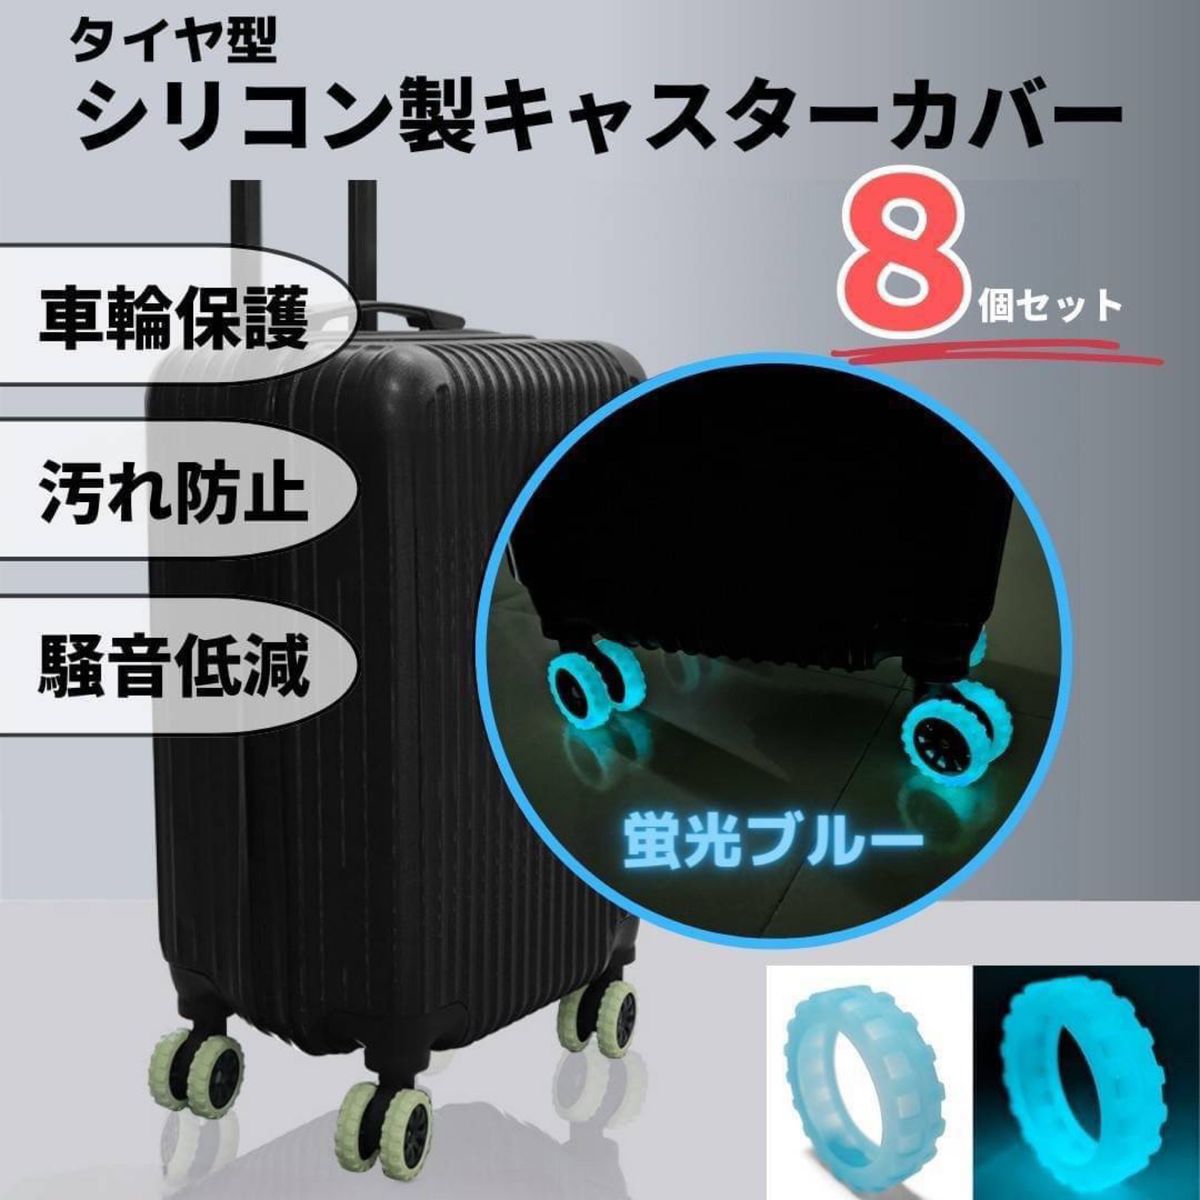 キャスターカバー シリコン 蛍光ブルー 車輪カバー 保護 汚れ防止 スーツケース